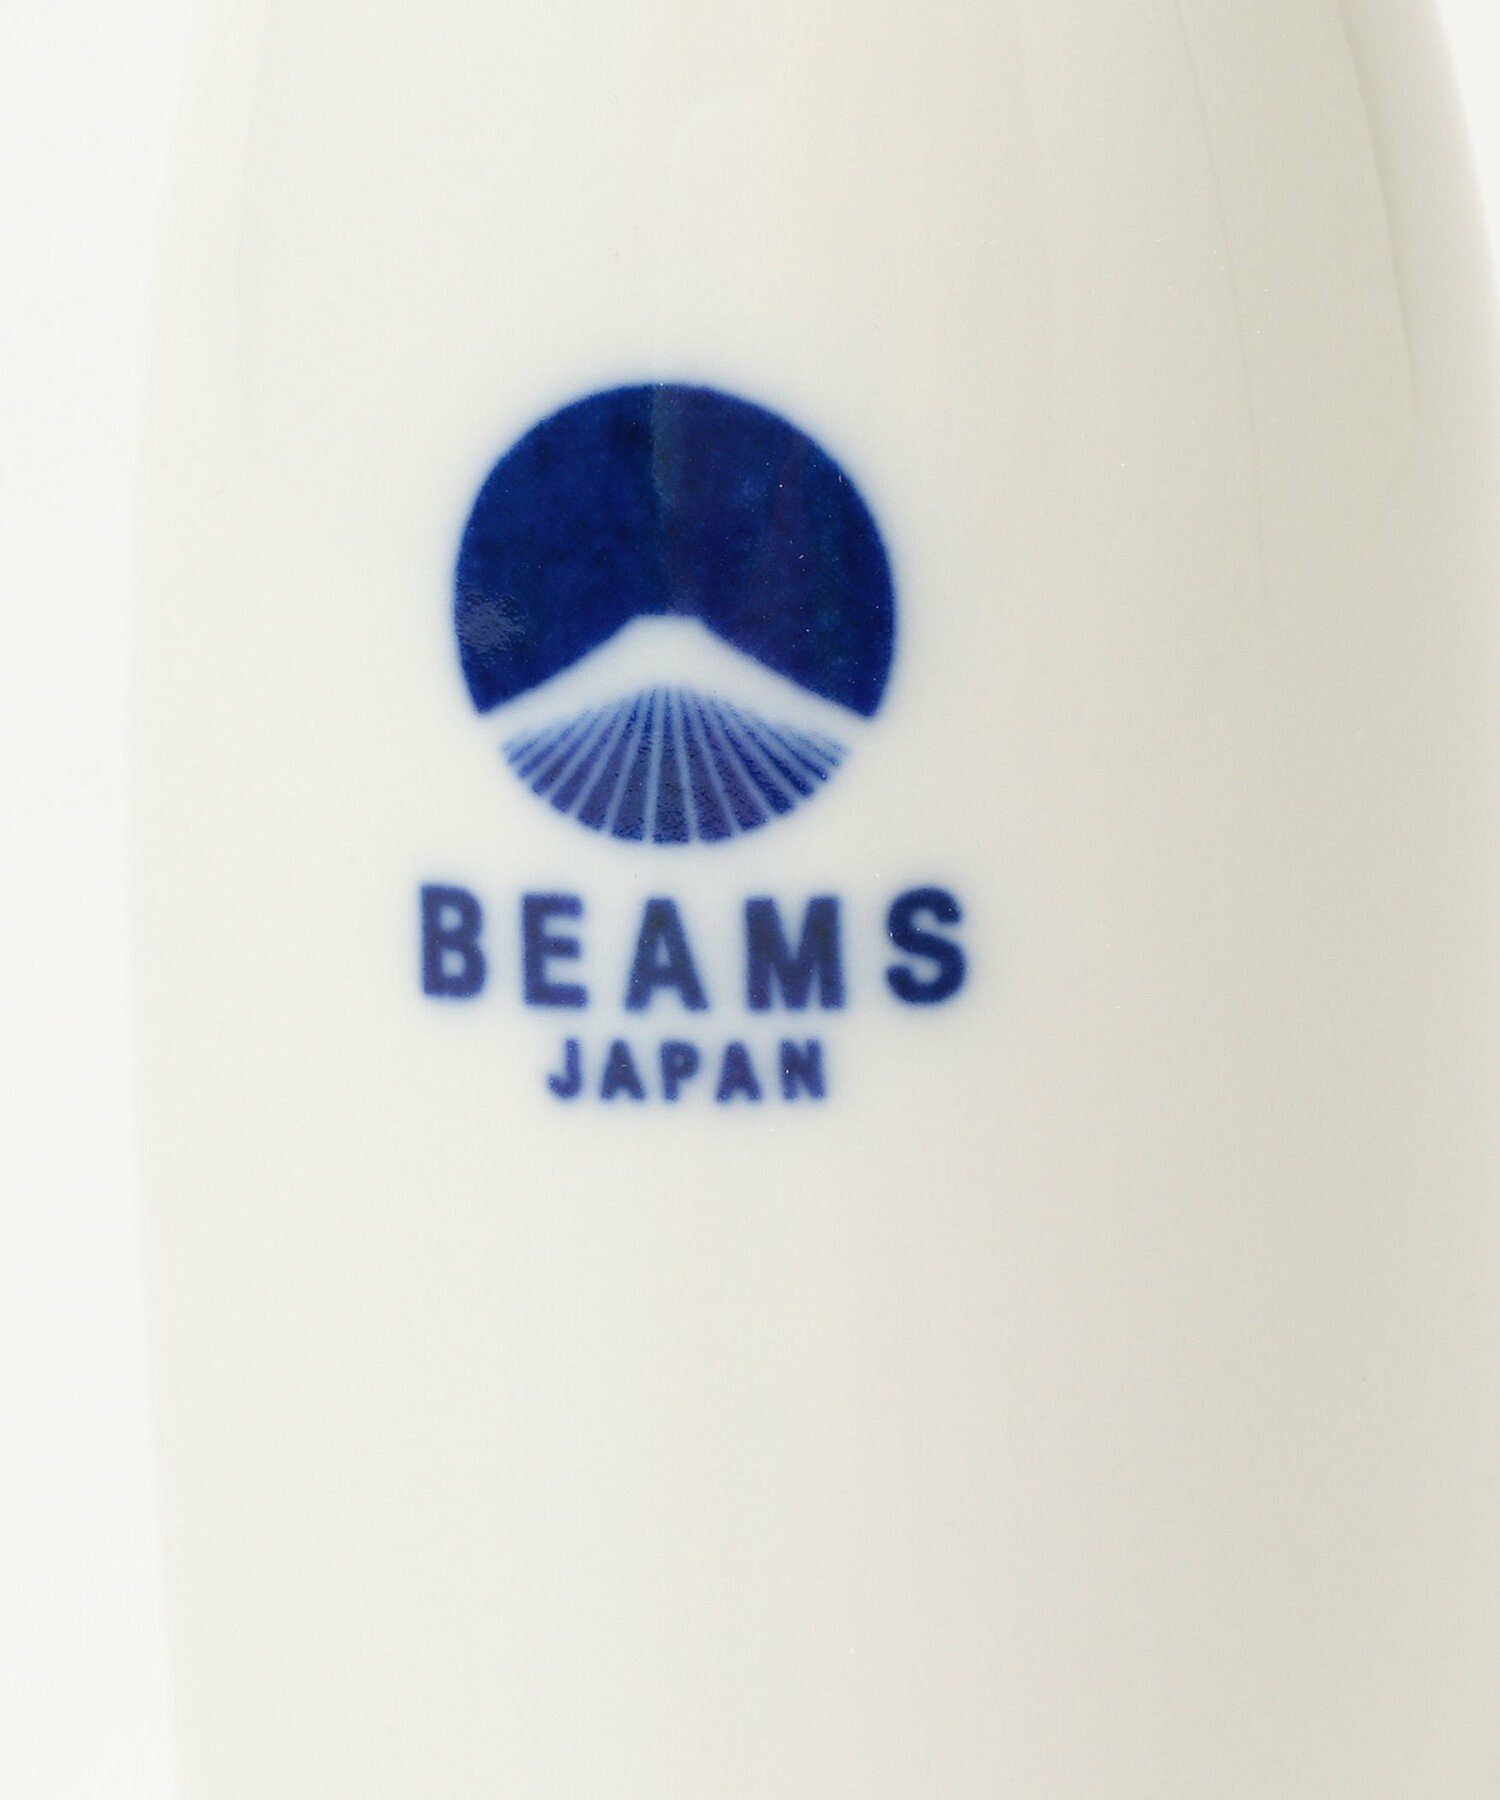 BEAMS JAPAN / ビームス ジャパン ロゴ 徳利 一合